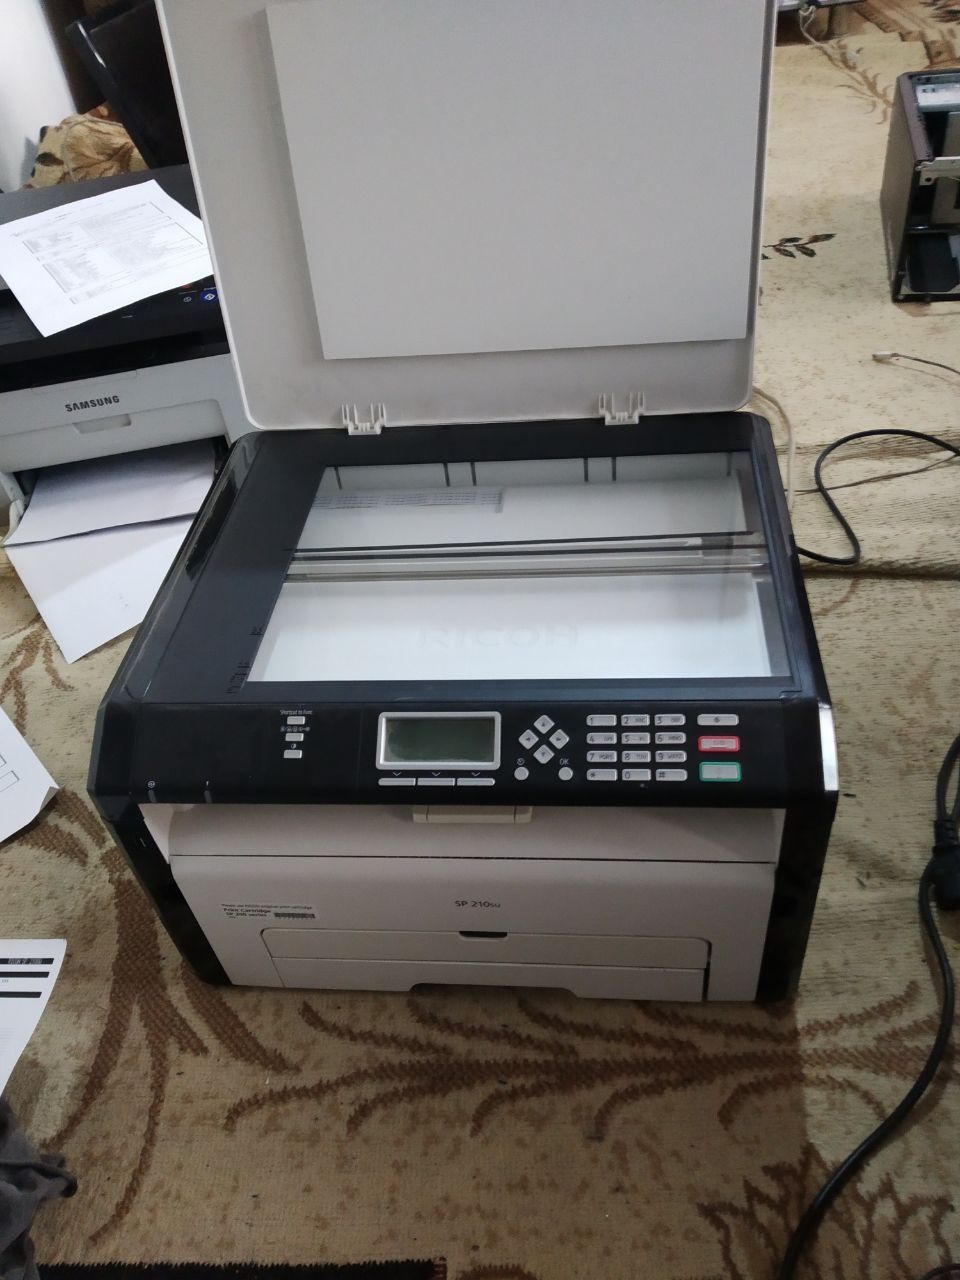 Самсунг принтер продаётся в хорошем состоянии мало пользовали